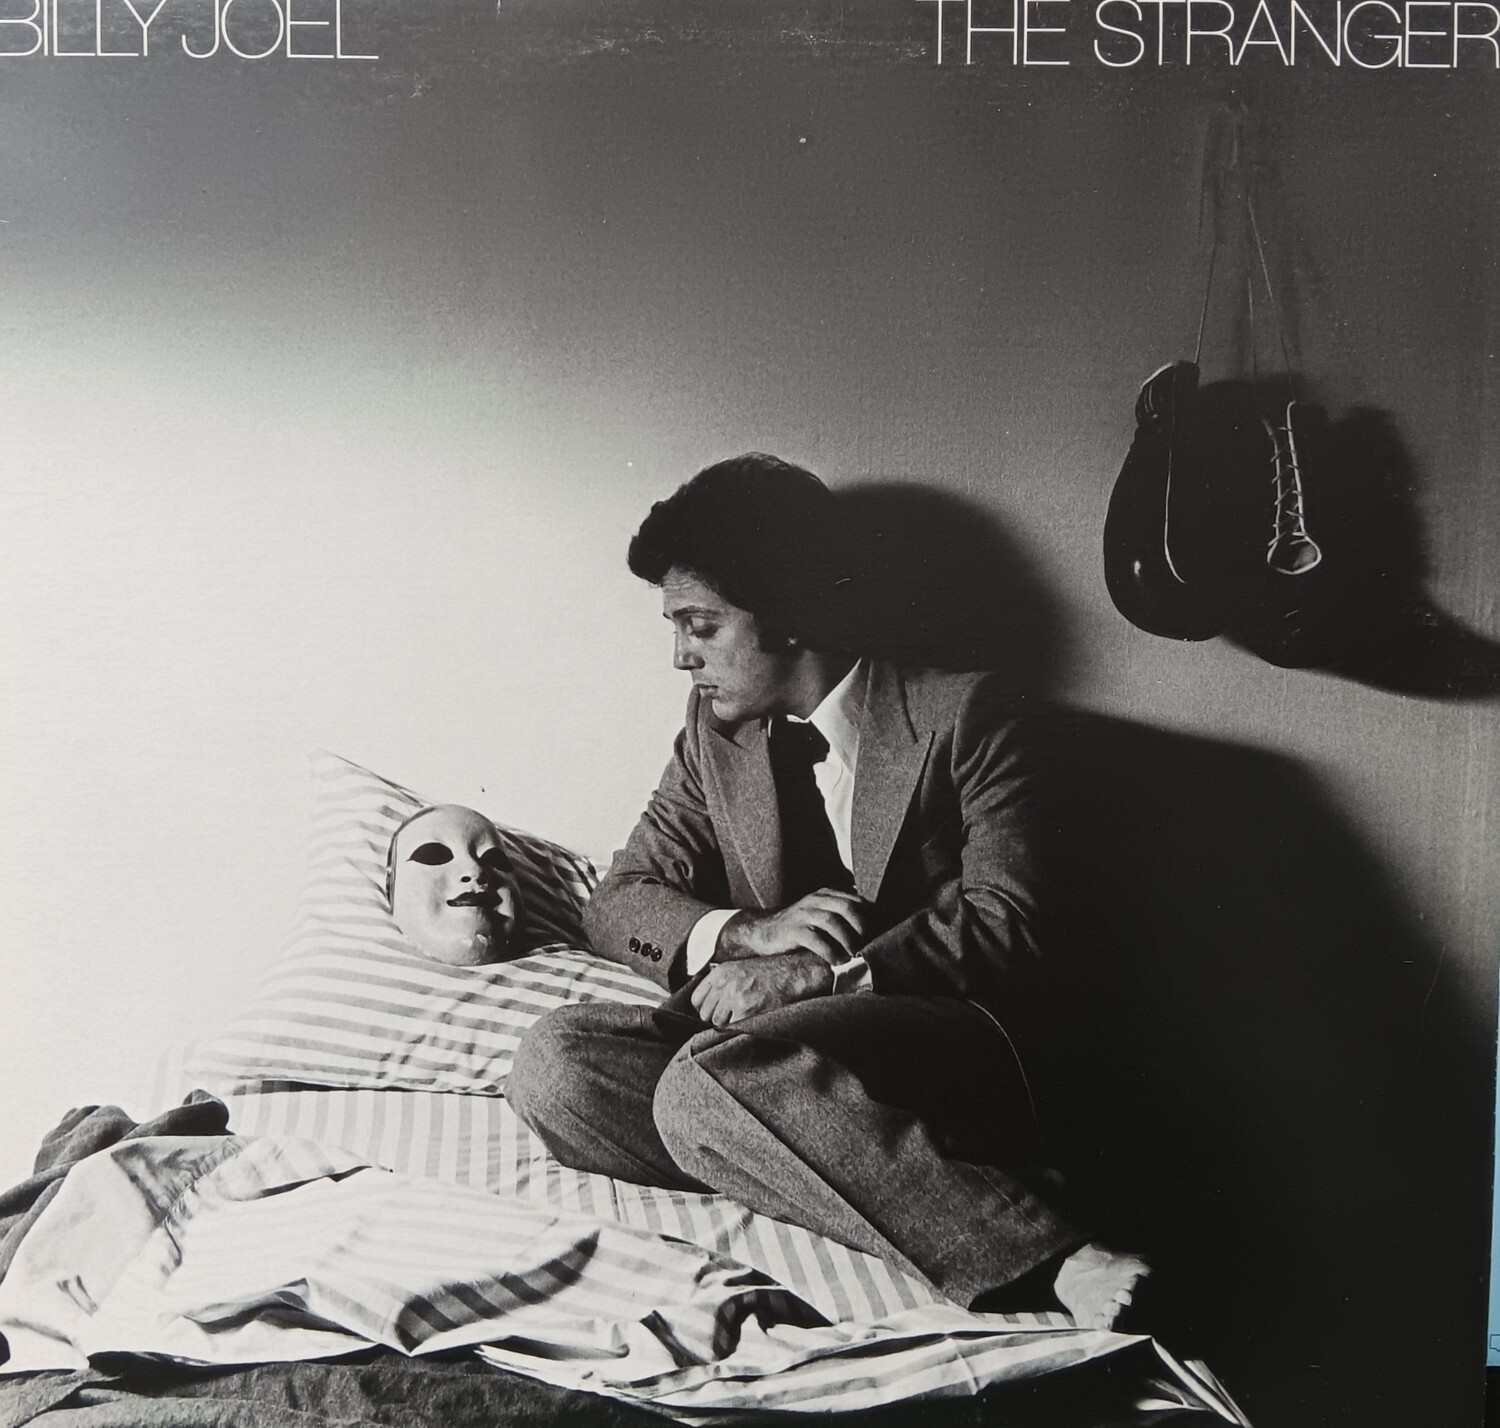 BILLY JOEL - The Stanger